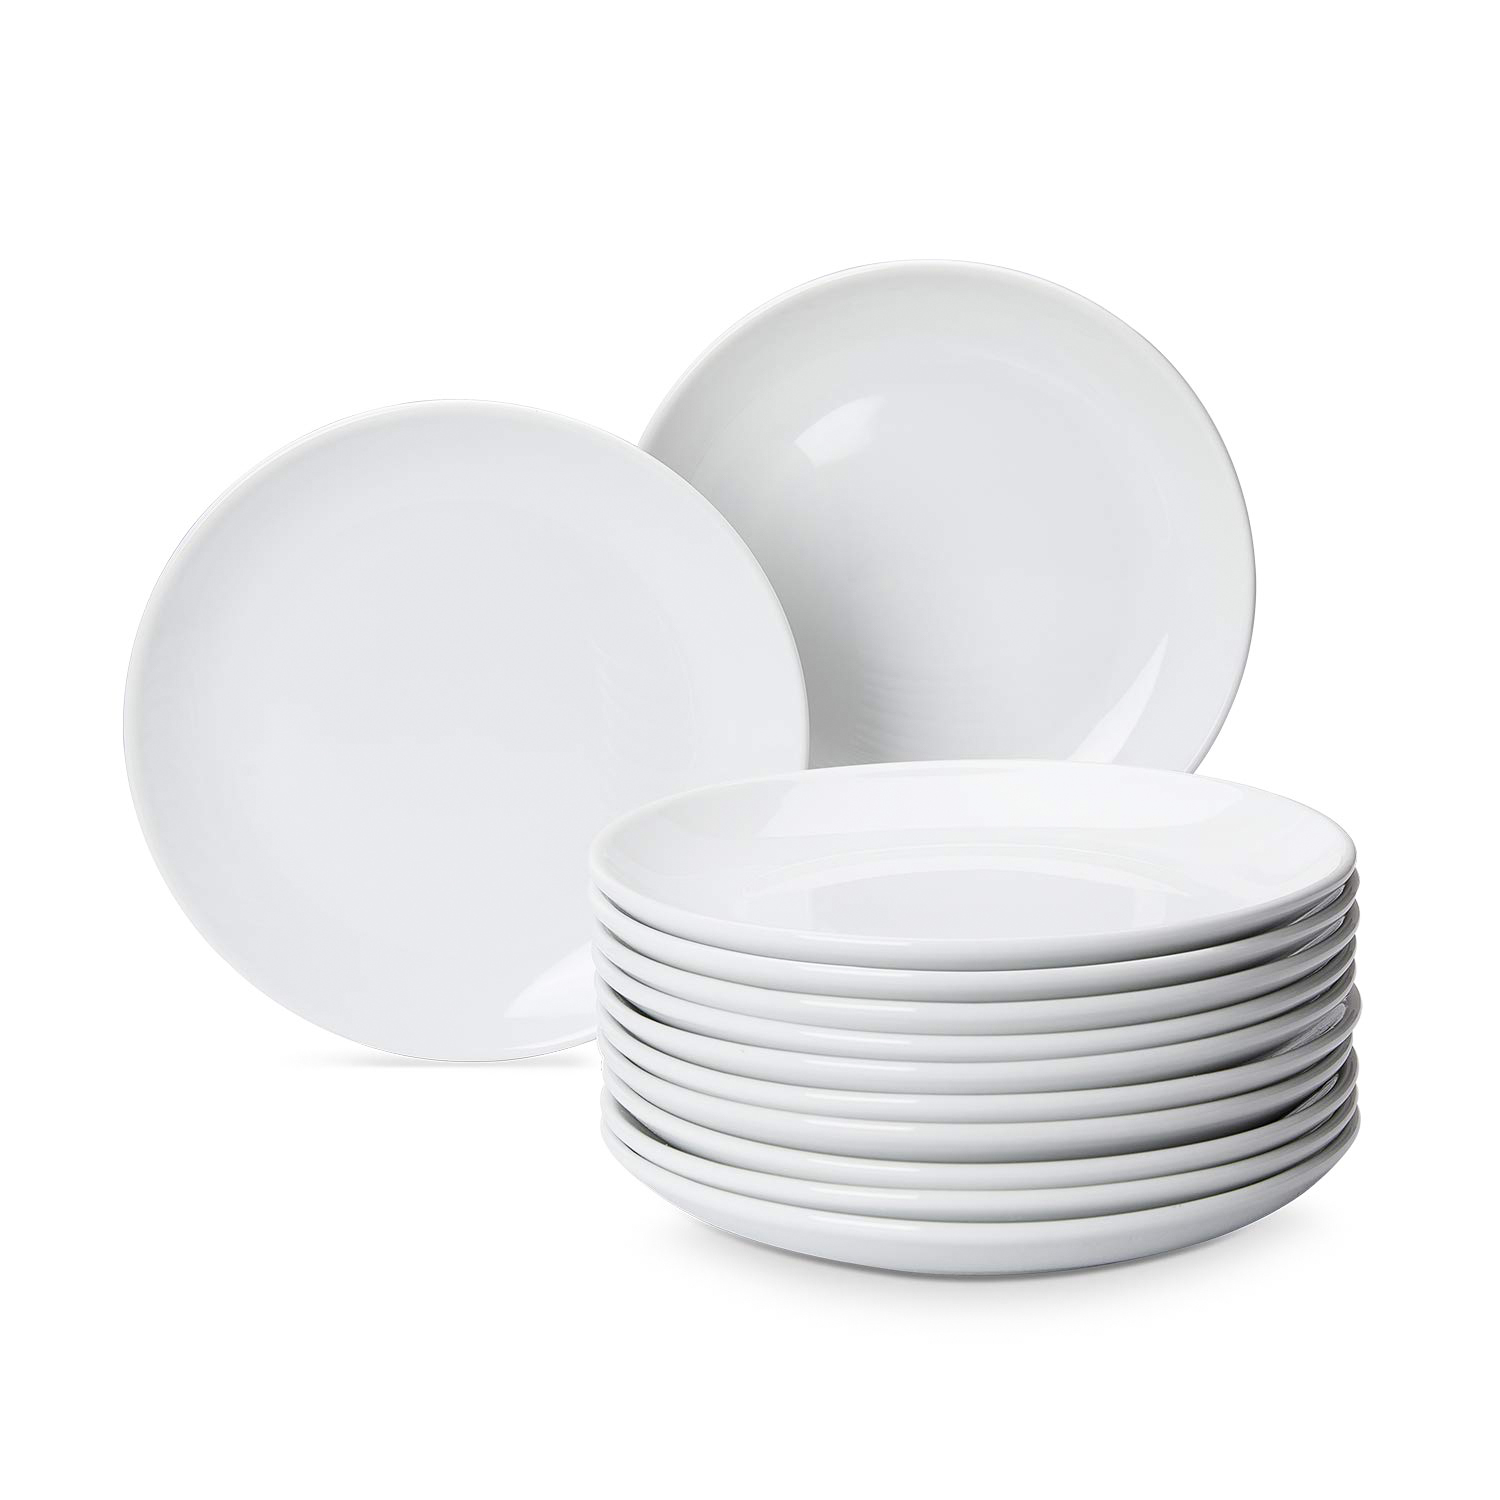 Cheap White Porcelain Dish Dinner Plates For Wedding